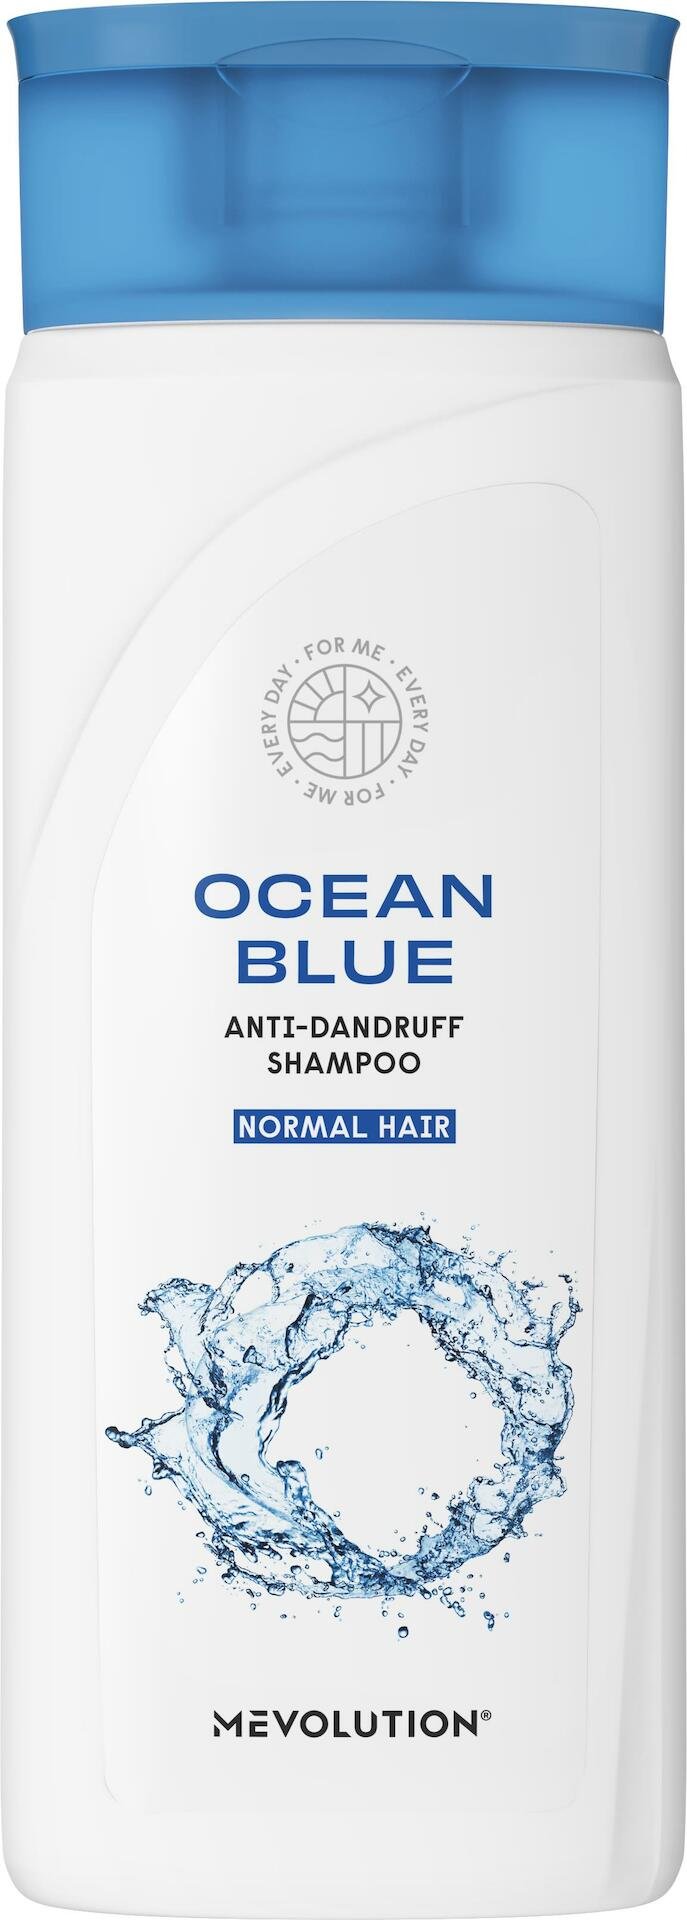 Mevolution Shampoo Ocean Blue 300 ml